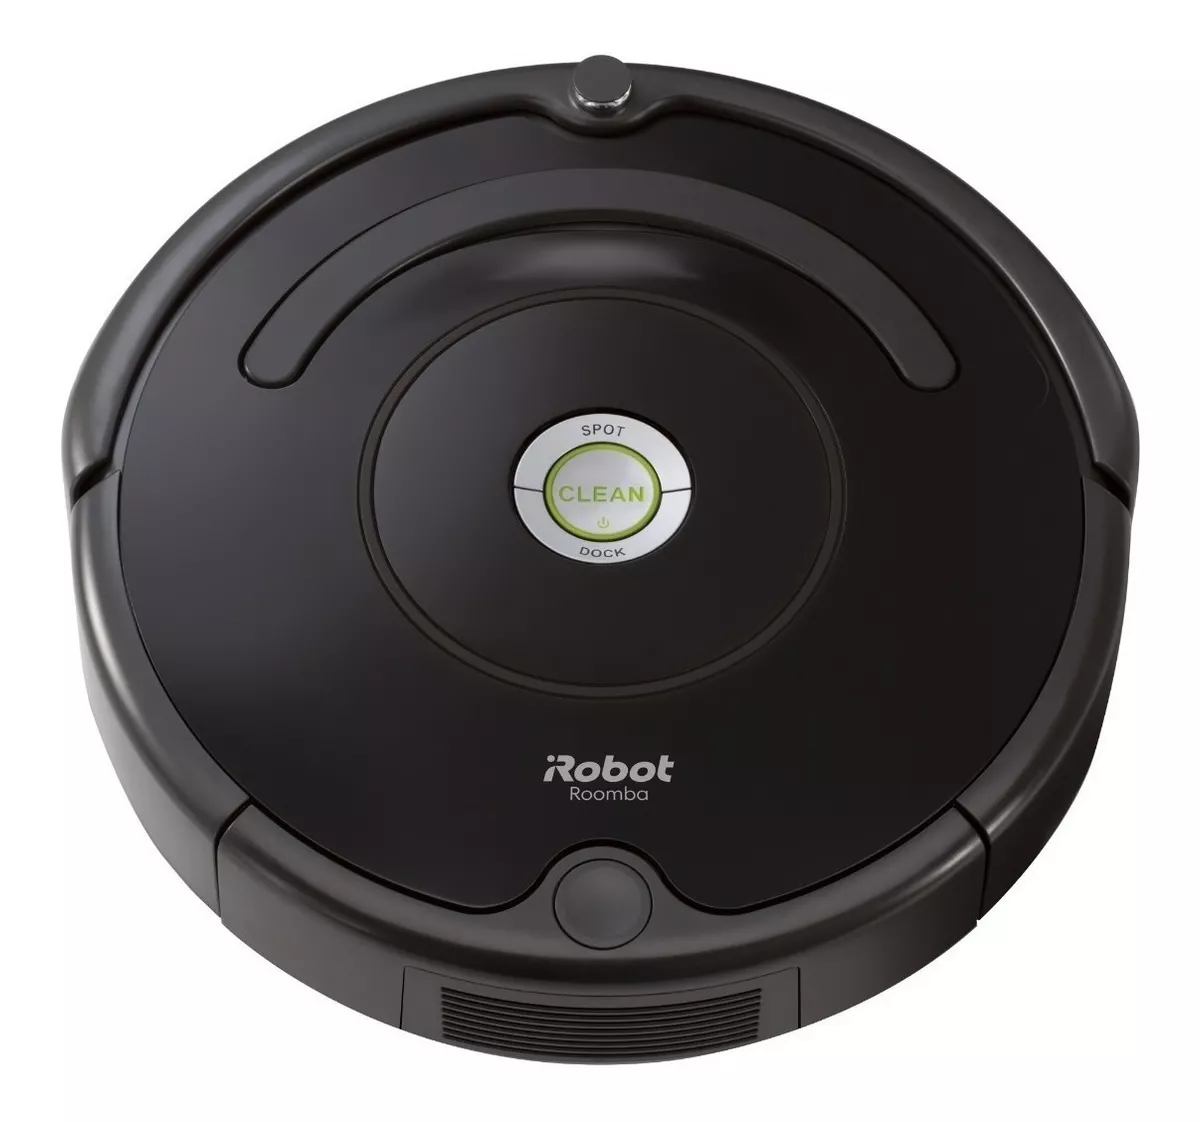 Aspiradora Robot Irobot 600 Roomba 614 Negra 100v/240v